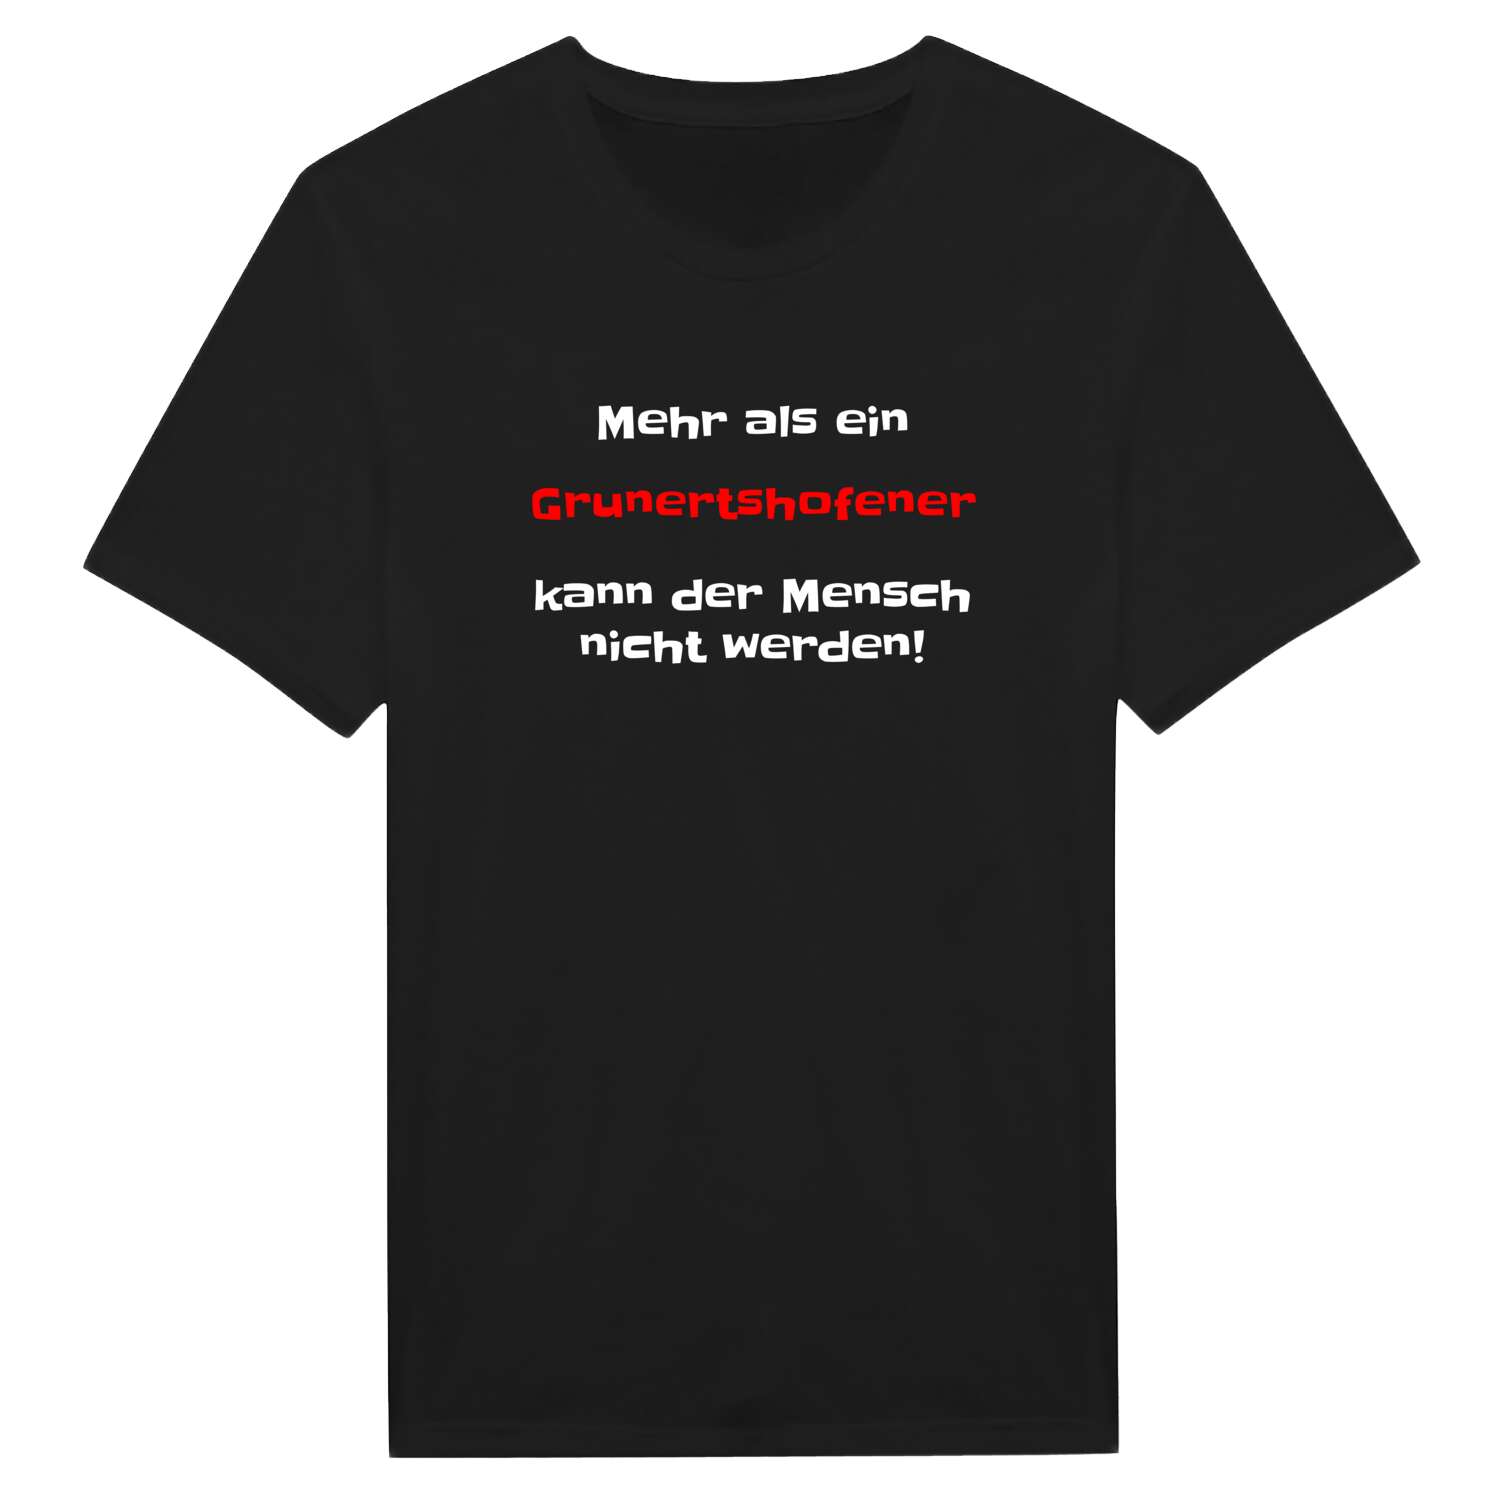 Grunertshofen T-Shirt »Mehr als ein«